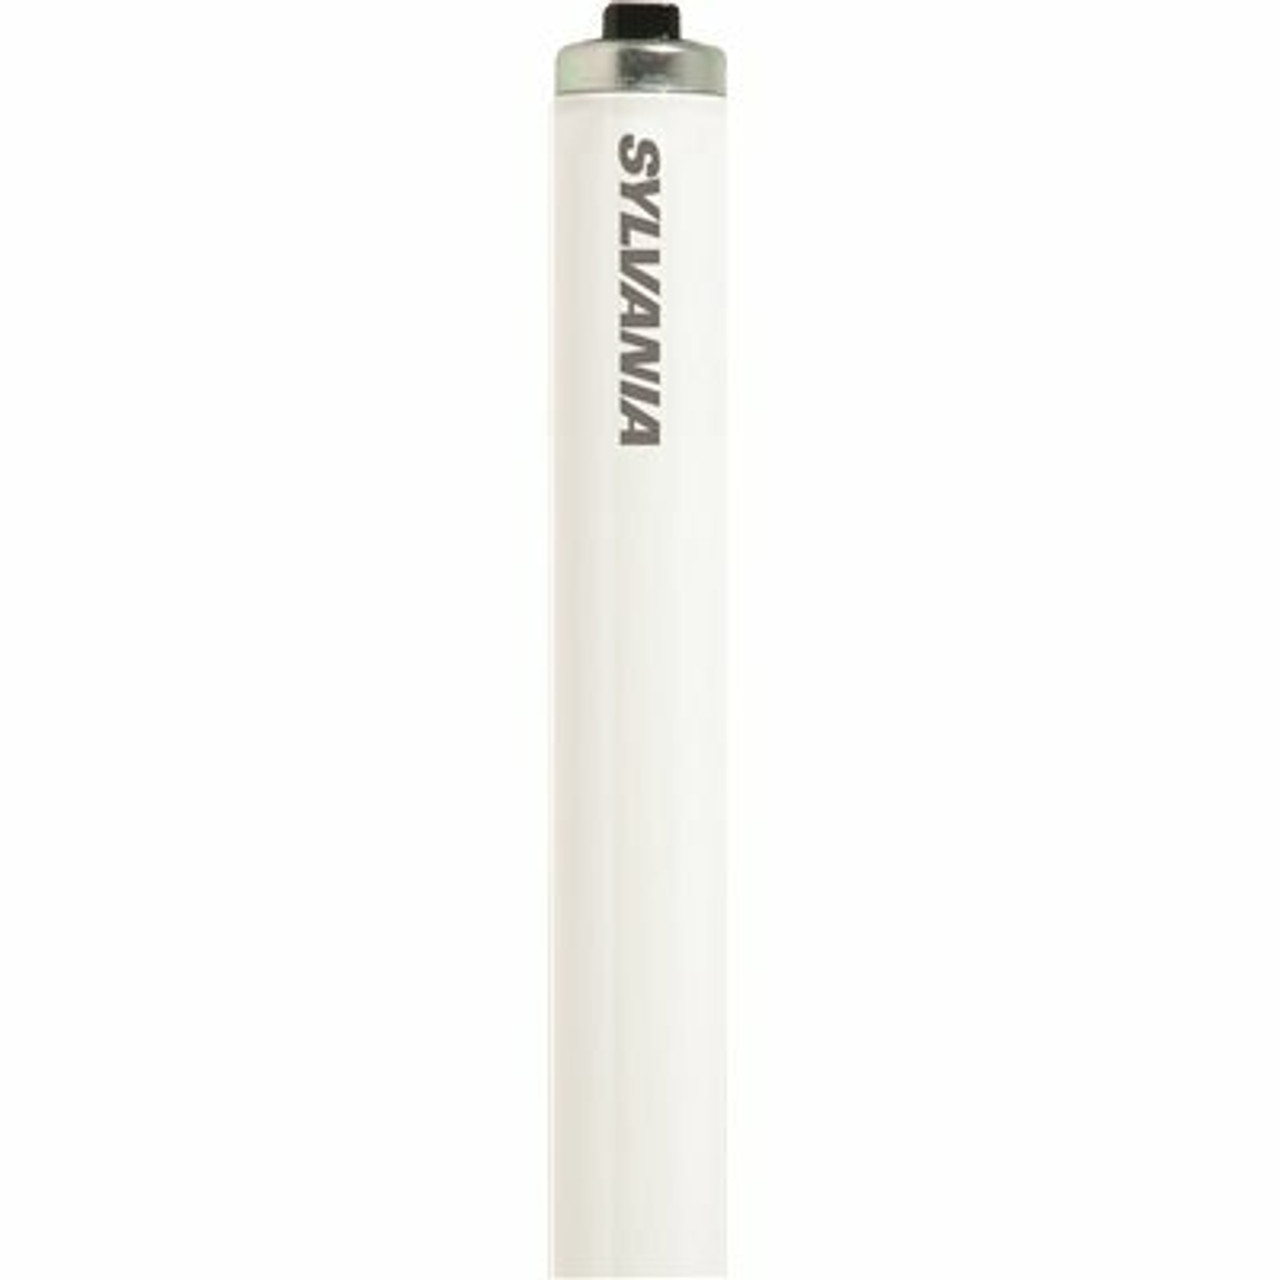 Sylvania 4 Ft. 60-Watt Linear T12 Fluorescent Tube Light Bulb, Cool White (1-Bulb)